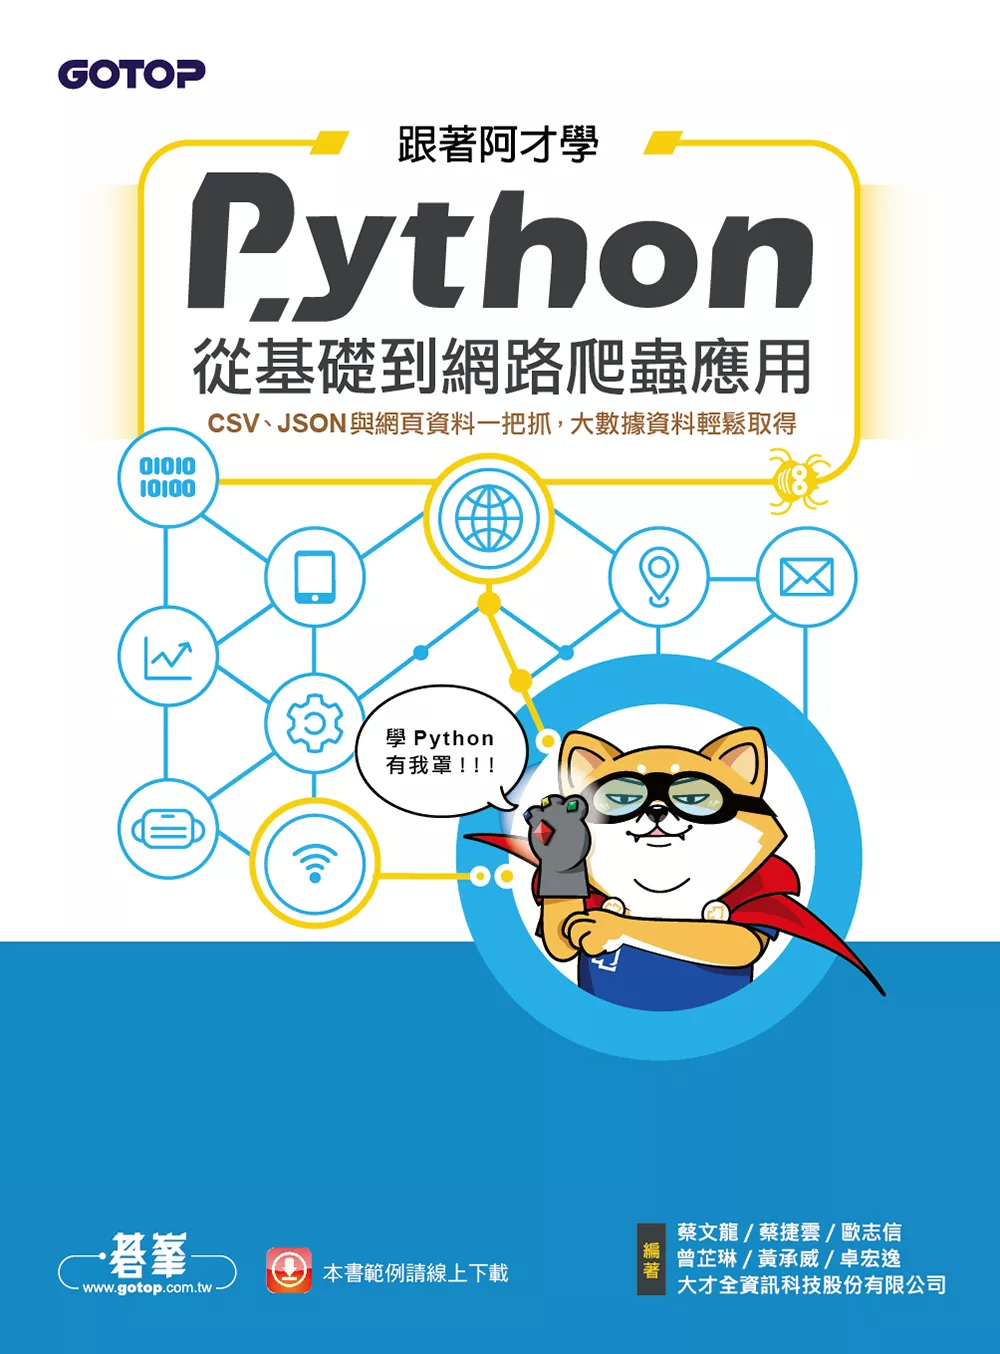 跟著阿才學Python - 從基礎到網路爬蟲應用 (電子書)